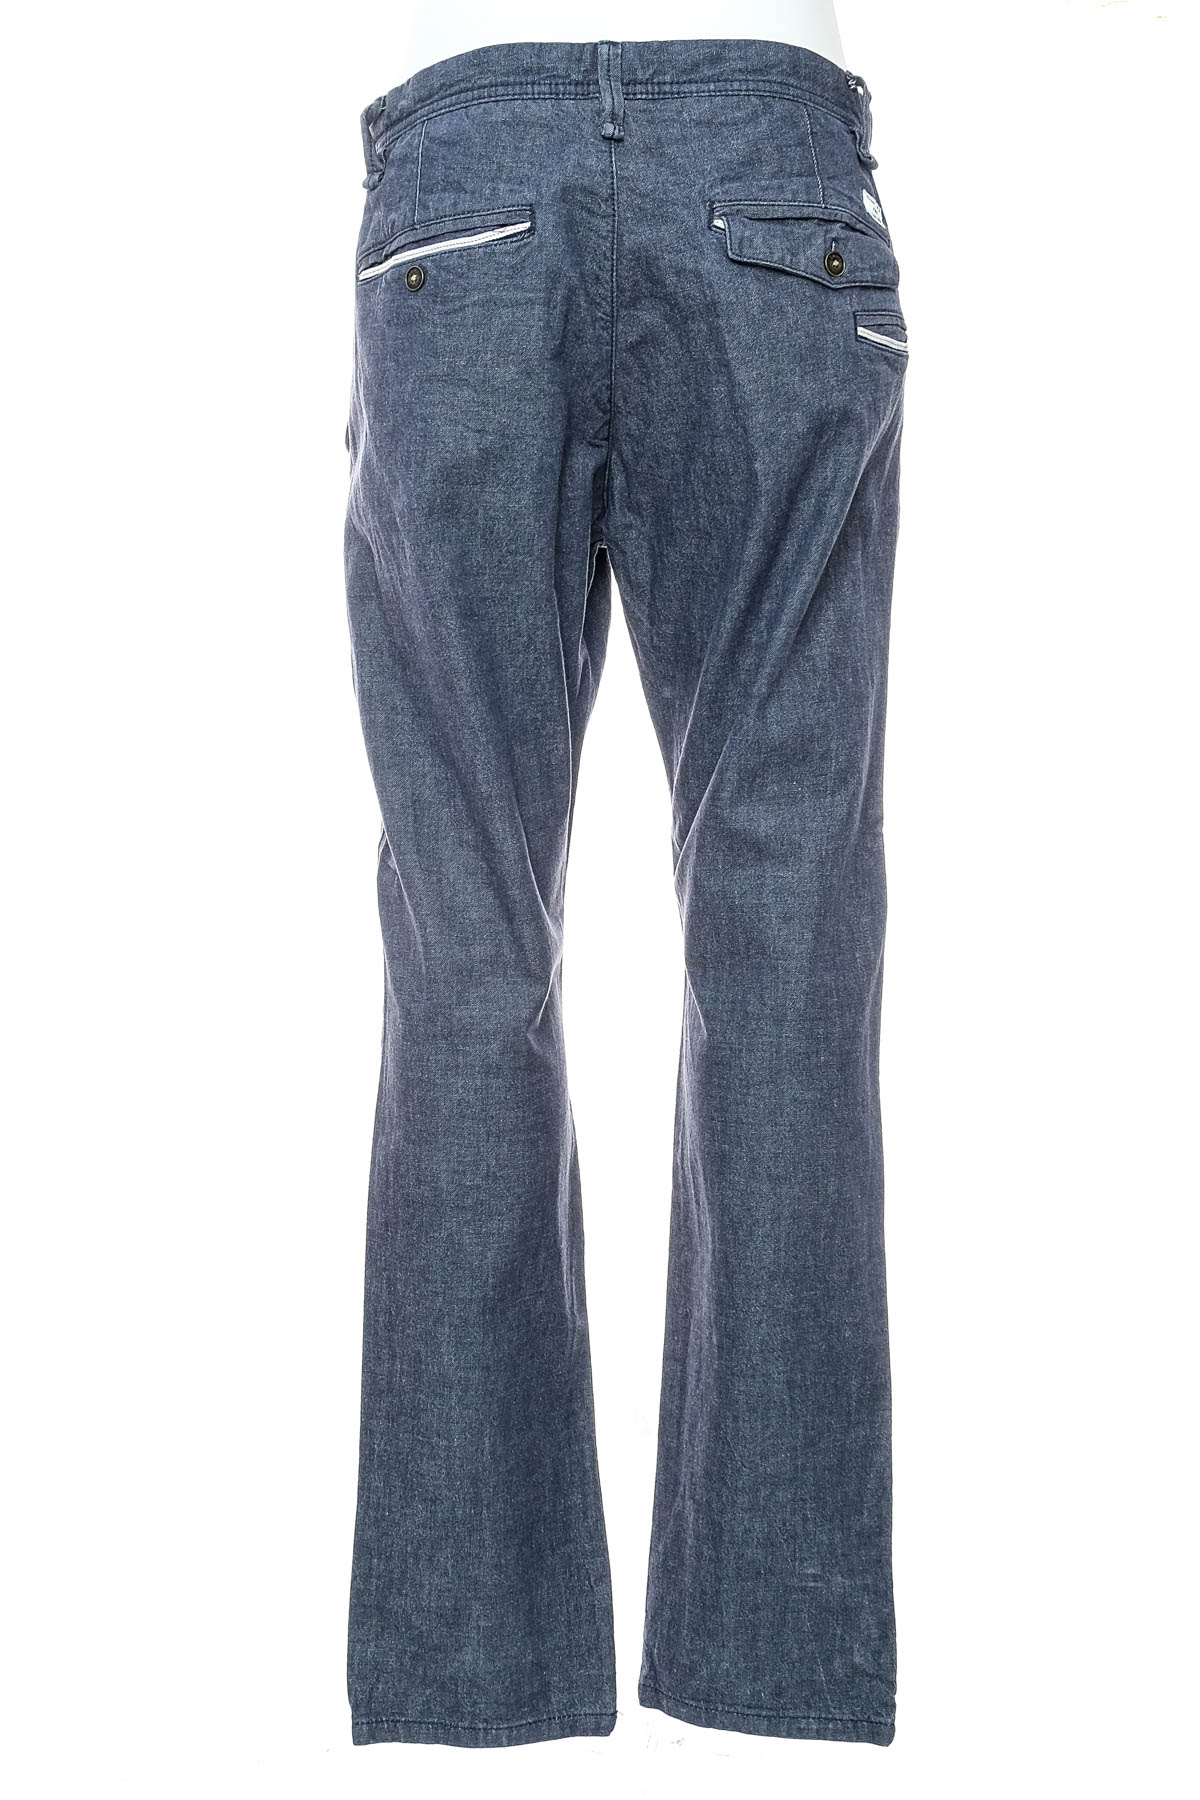 Men's jeans - S.Oliver - 1